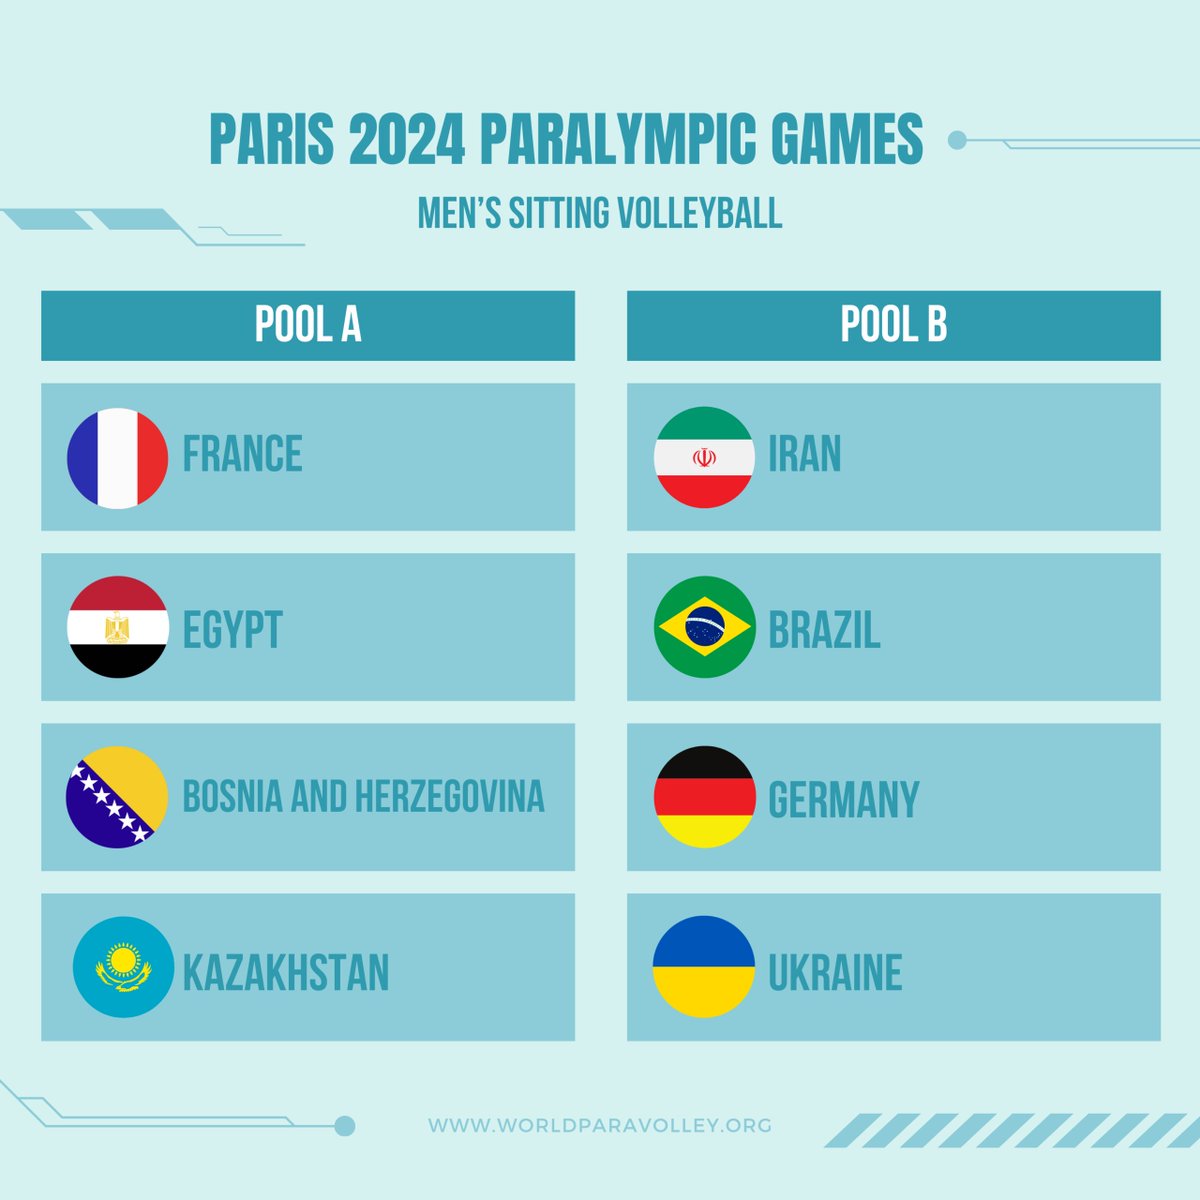 #Paris2024 
🚨UFFICIALE🚨
Svelati i gironi dei tornei paralimpici femminili e maschili di #SittingVolley
Le azzurre🇮🇹 nella pool A con Francia🇫🇷, Stati Uniti🇺🇸 e Cina🇨🇳

➡️La news: federvolley.it/node/128246 

#Paris2024 @paris2024 | @CIPnotizie | @ParaVolley